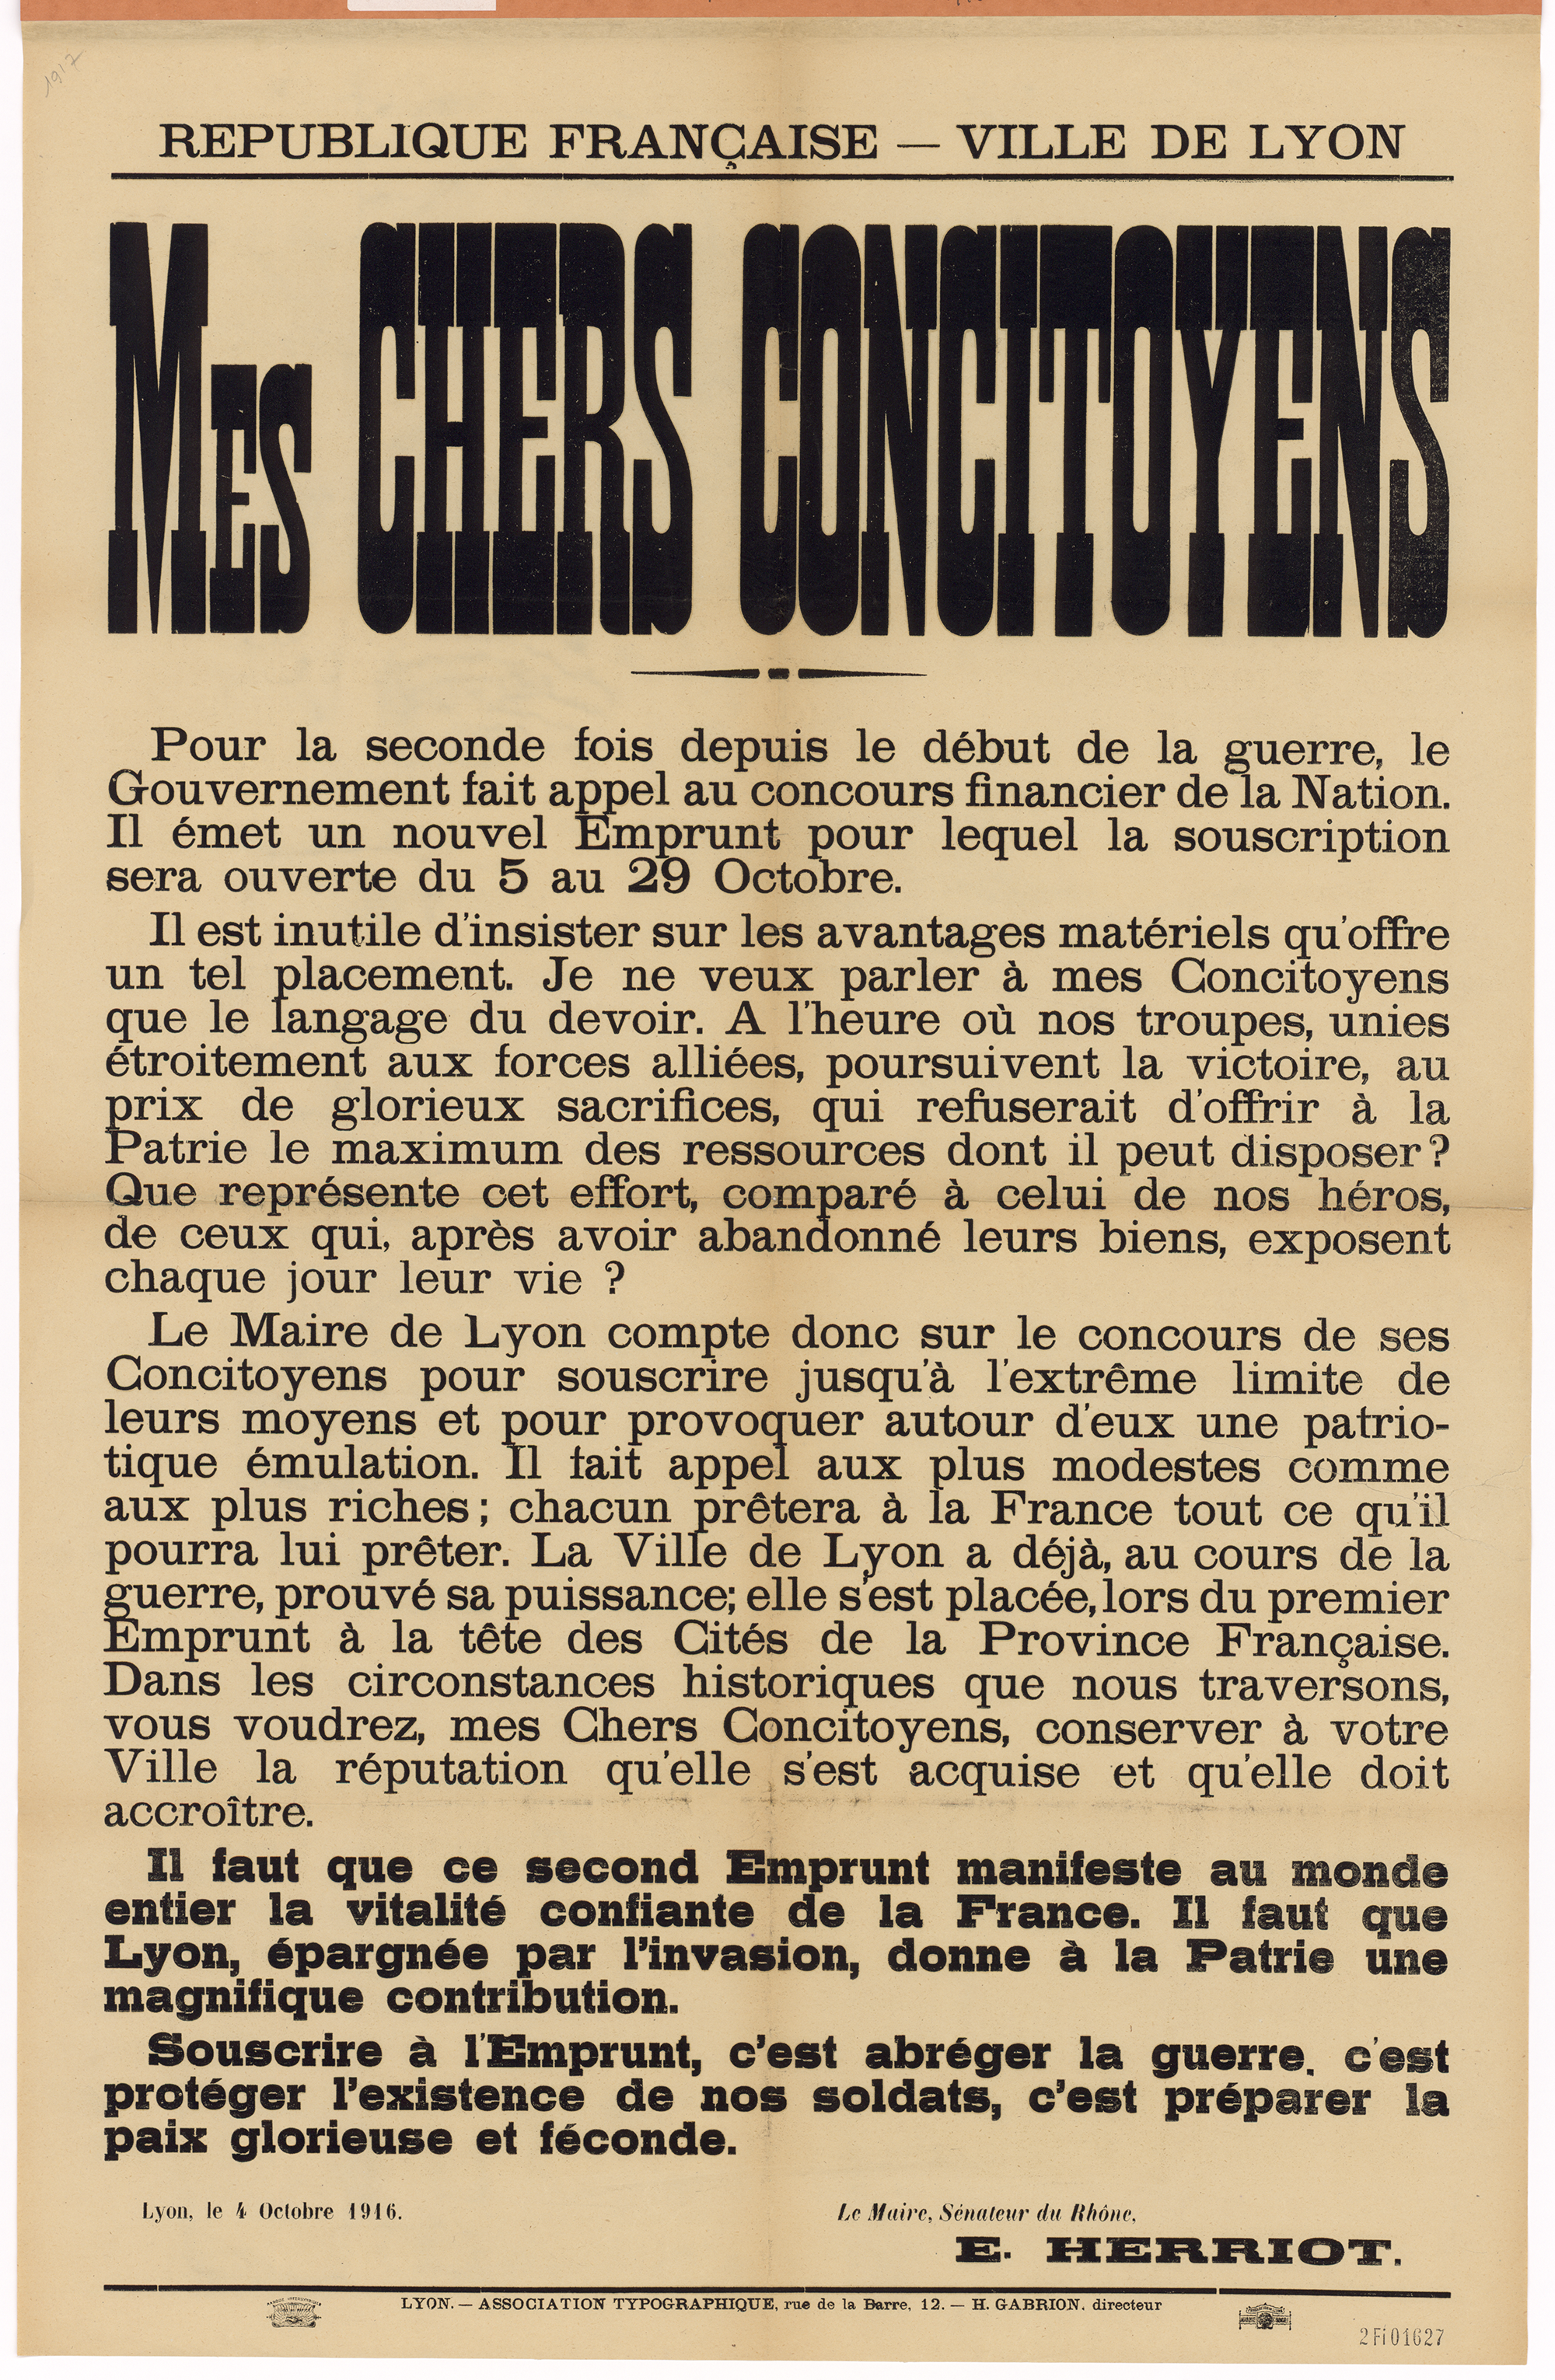 Affiche publiée par la Municipalité lyonnaise lors du lancement du 2ème emprunt national. Appel d'Edouard Herriot à ses concitoyens pour souscrire l'emprunt national, 4 octobre 1916 - 2fI/1627